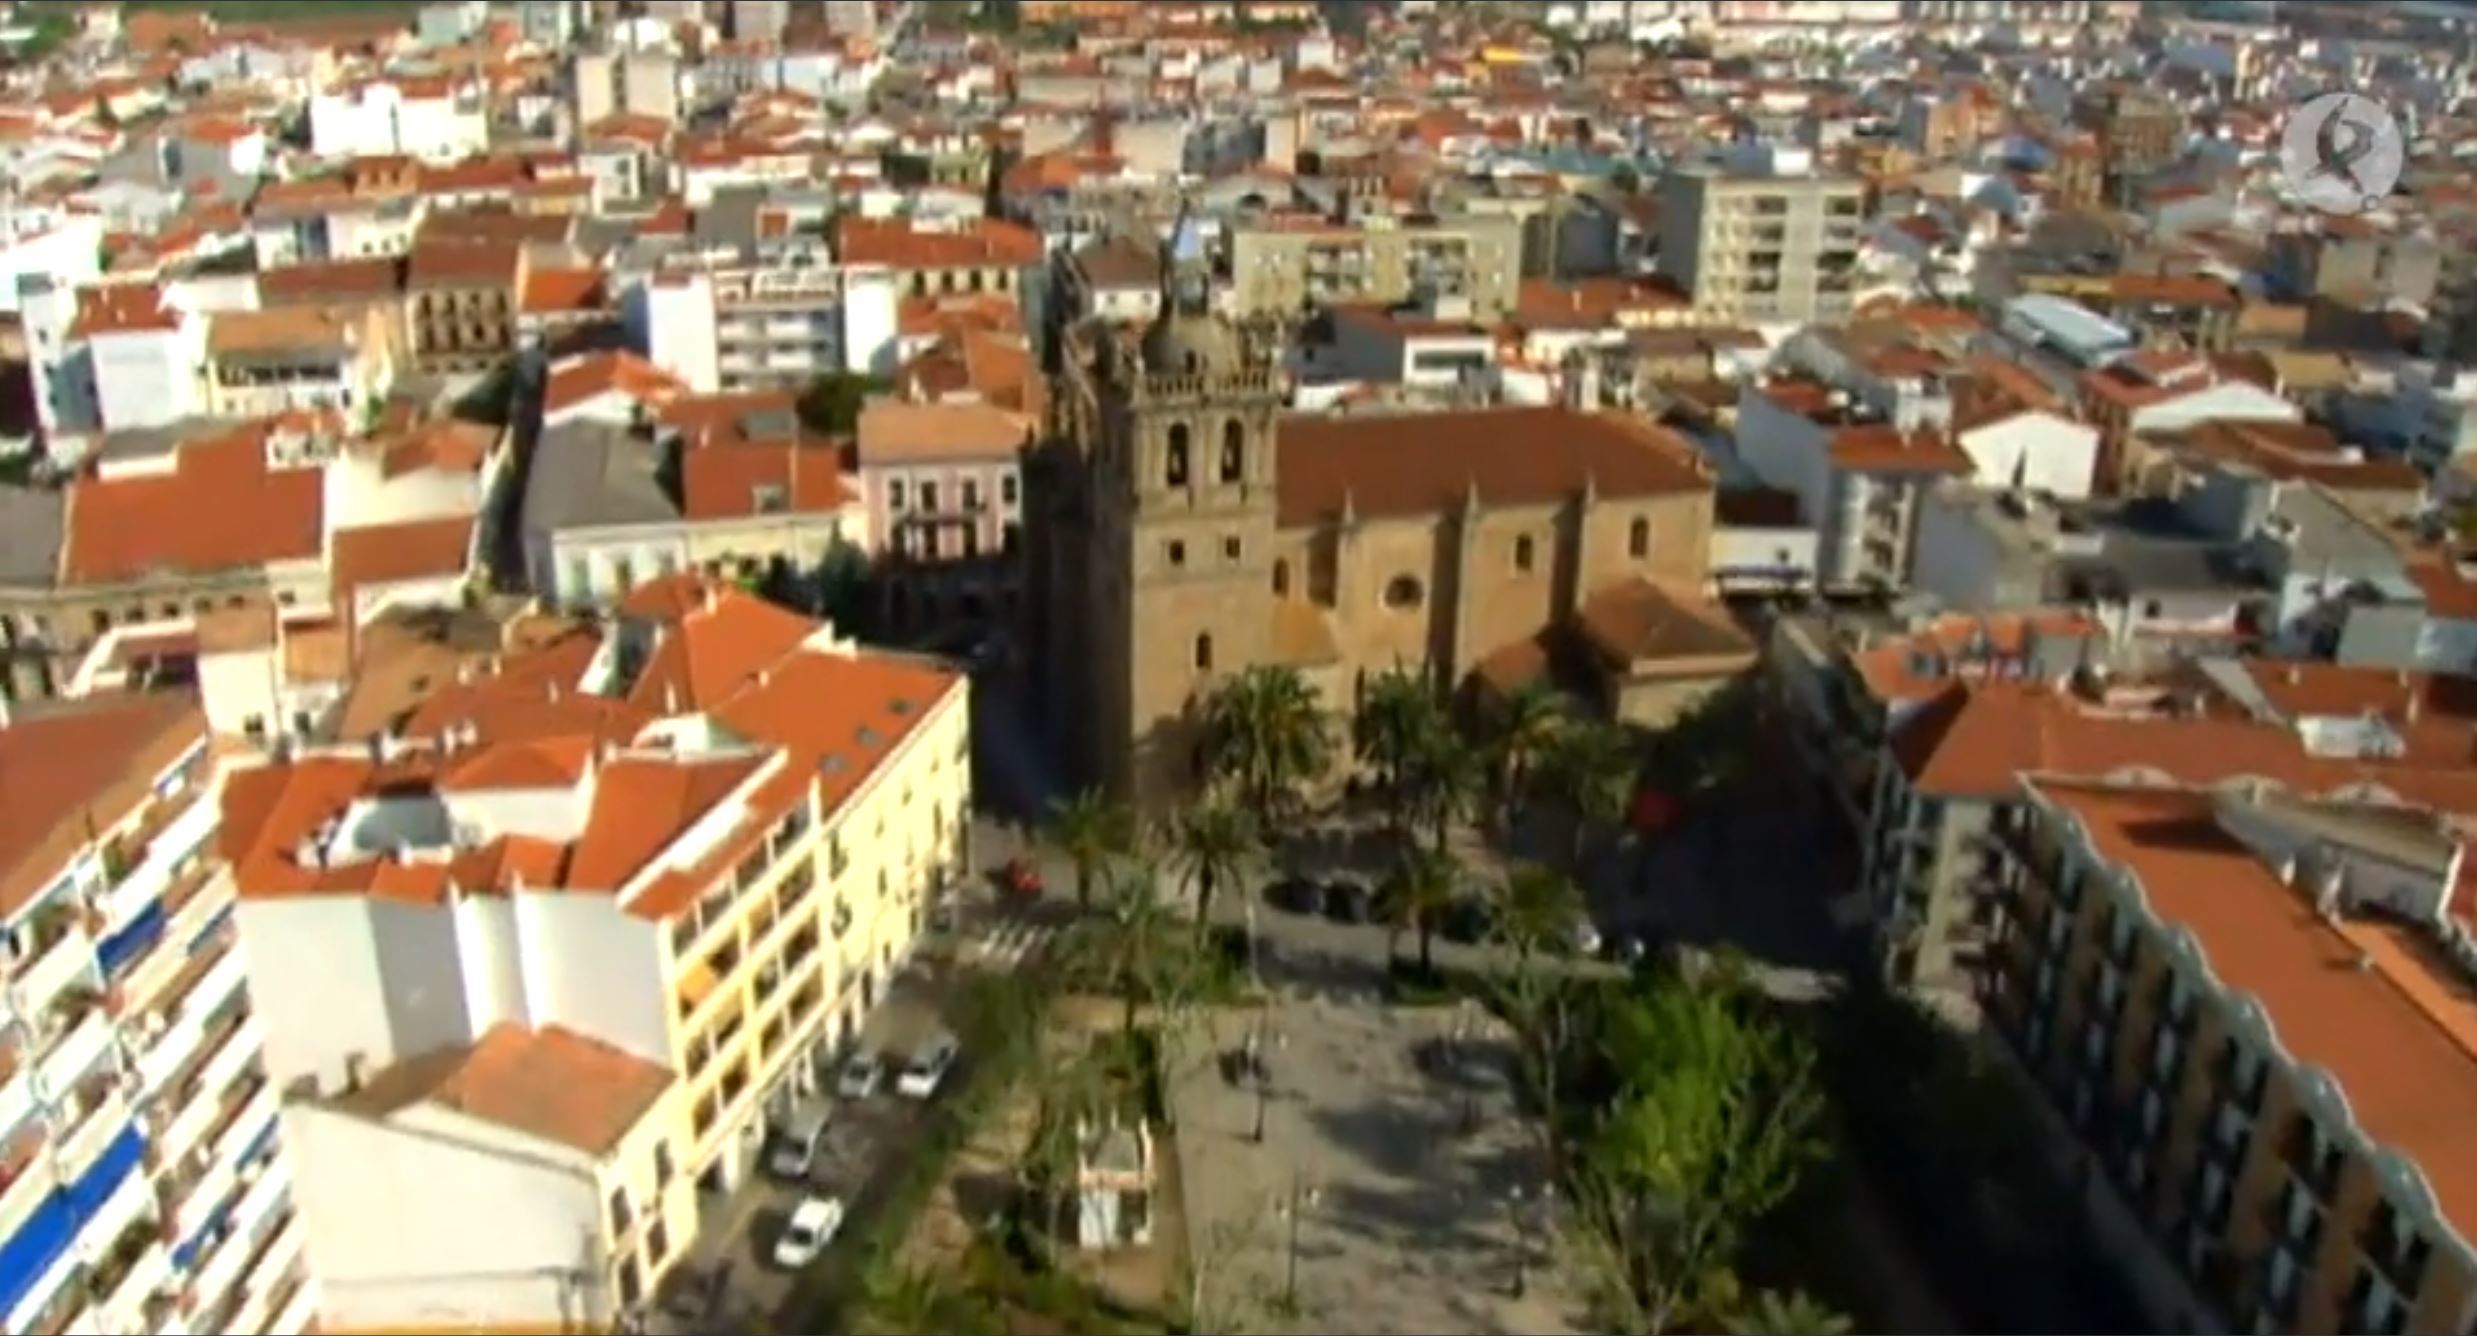 Badajoz, de Este a Oeste